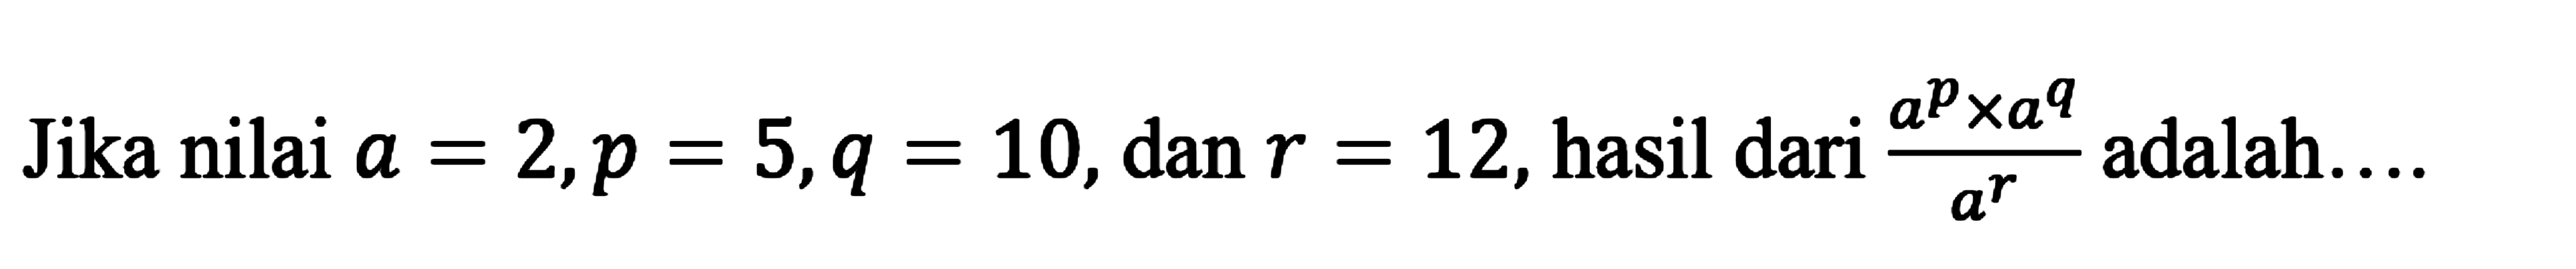 Jika nilai a = 2,p = 5,q = 10,dan r = 12, hasil dari adalah: (a^p x a^q)/a^r